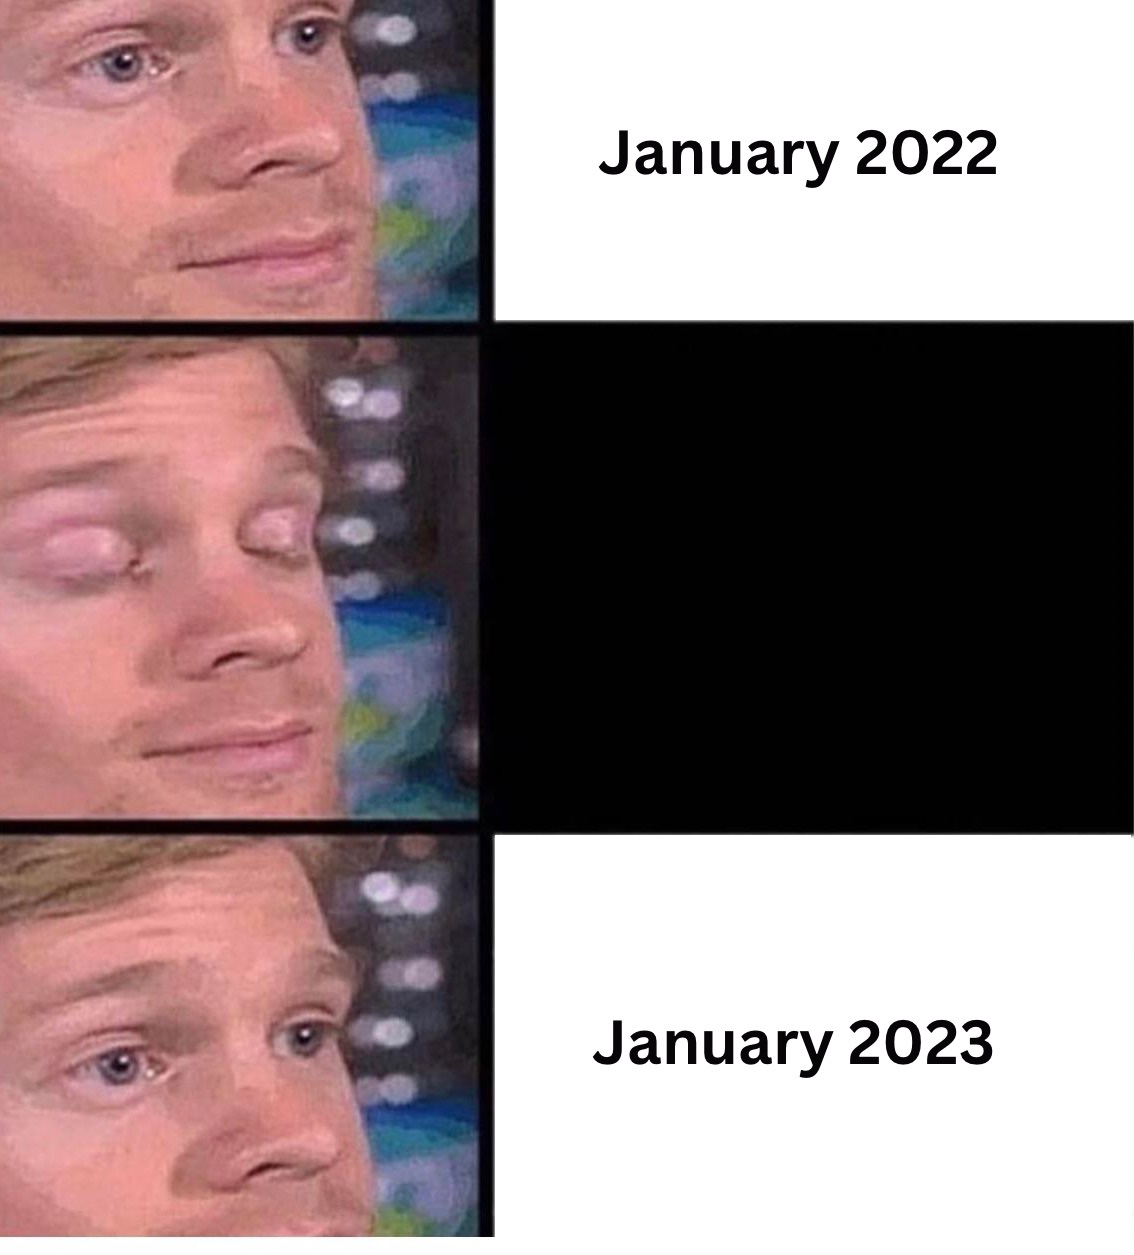 January 2022 vs January 2023 blinking guy meme